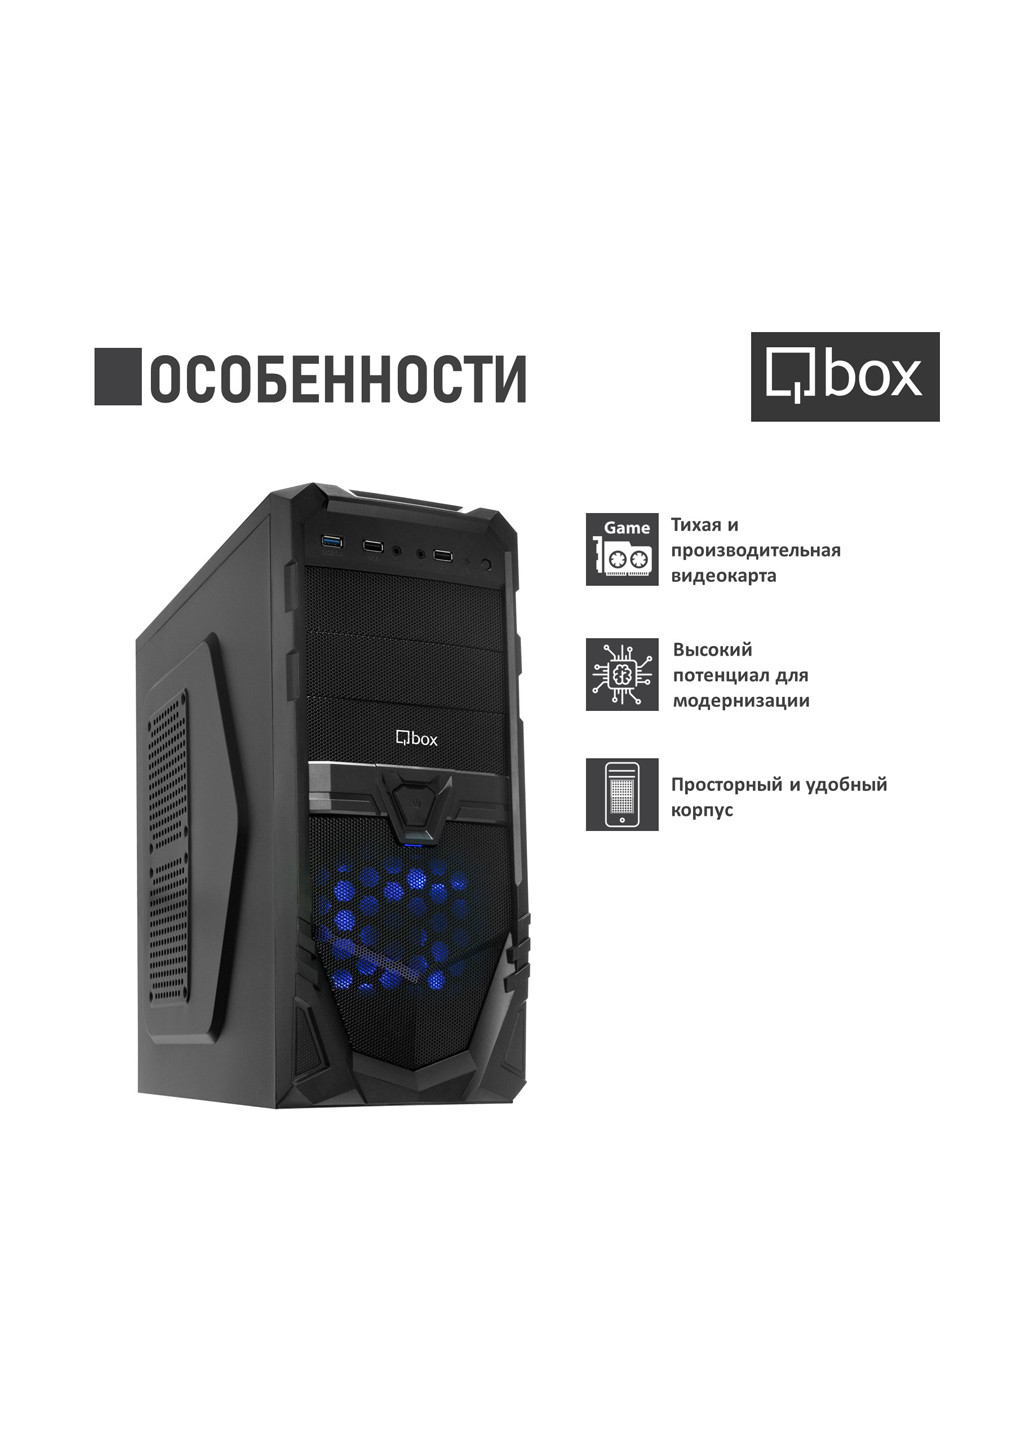 Компьютер I2672 Qbox qbox i2672 (131396736)